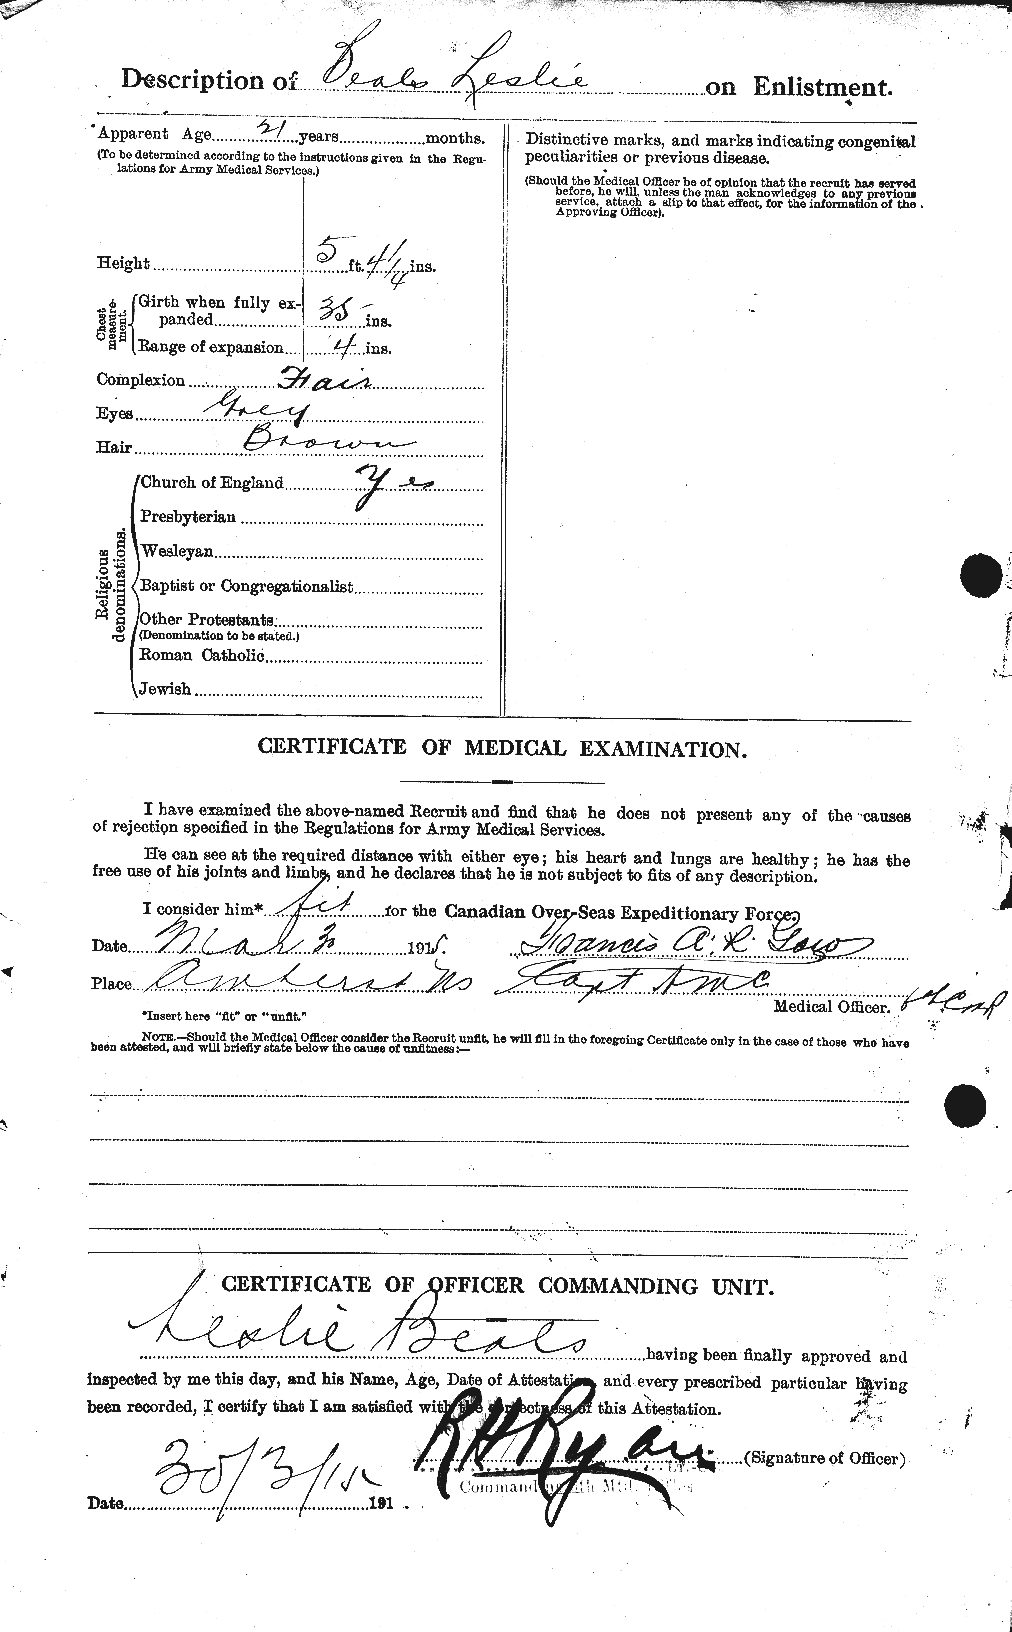 Dossiers du Personnel de la Première Guerre mondiale - CEC 235393b